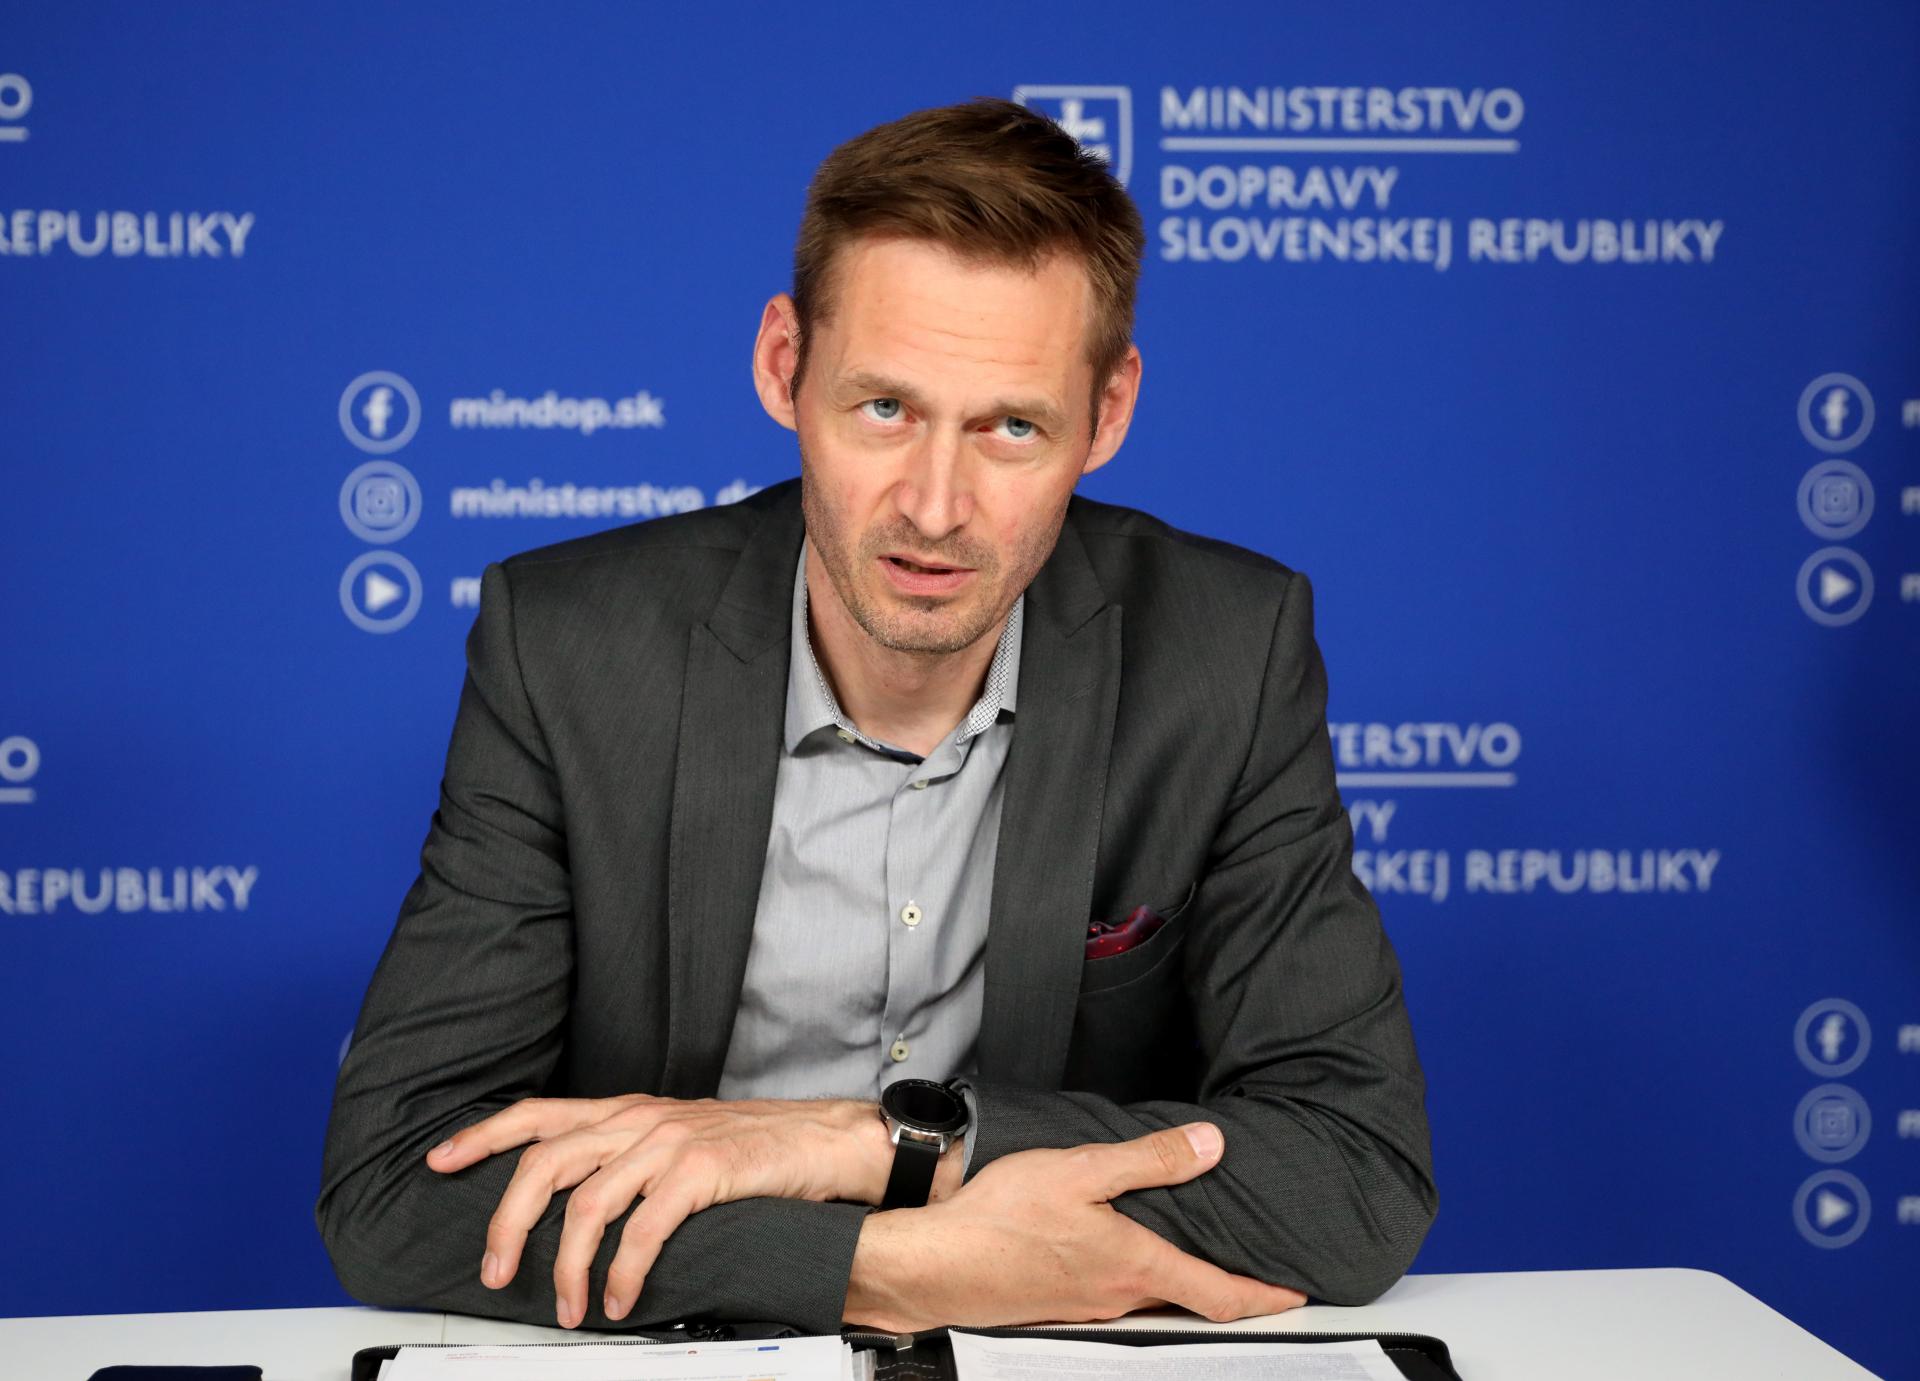 Poradca ministra pre HN: Podzemný terminál ako v Zürichu sa dá urobiť aj pod Hlavnou stanicou v Bratislave